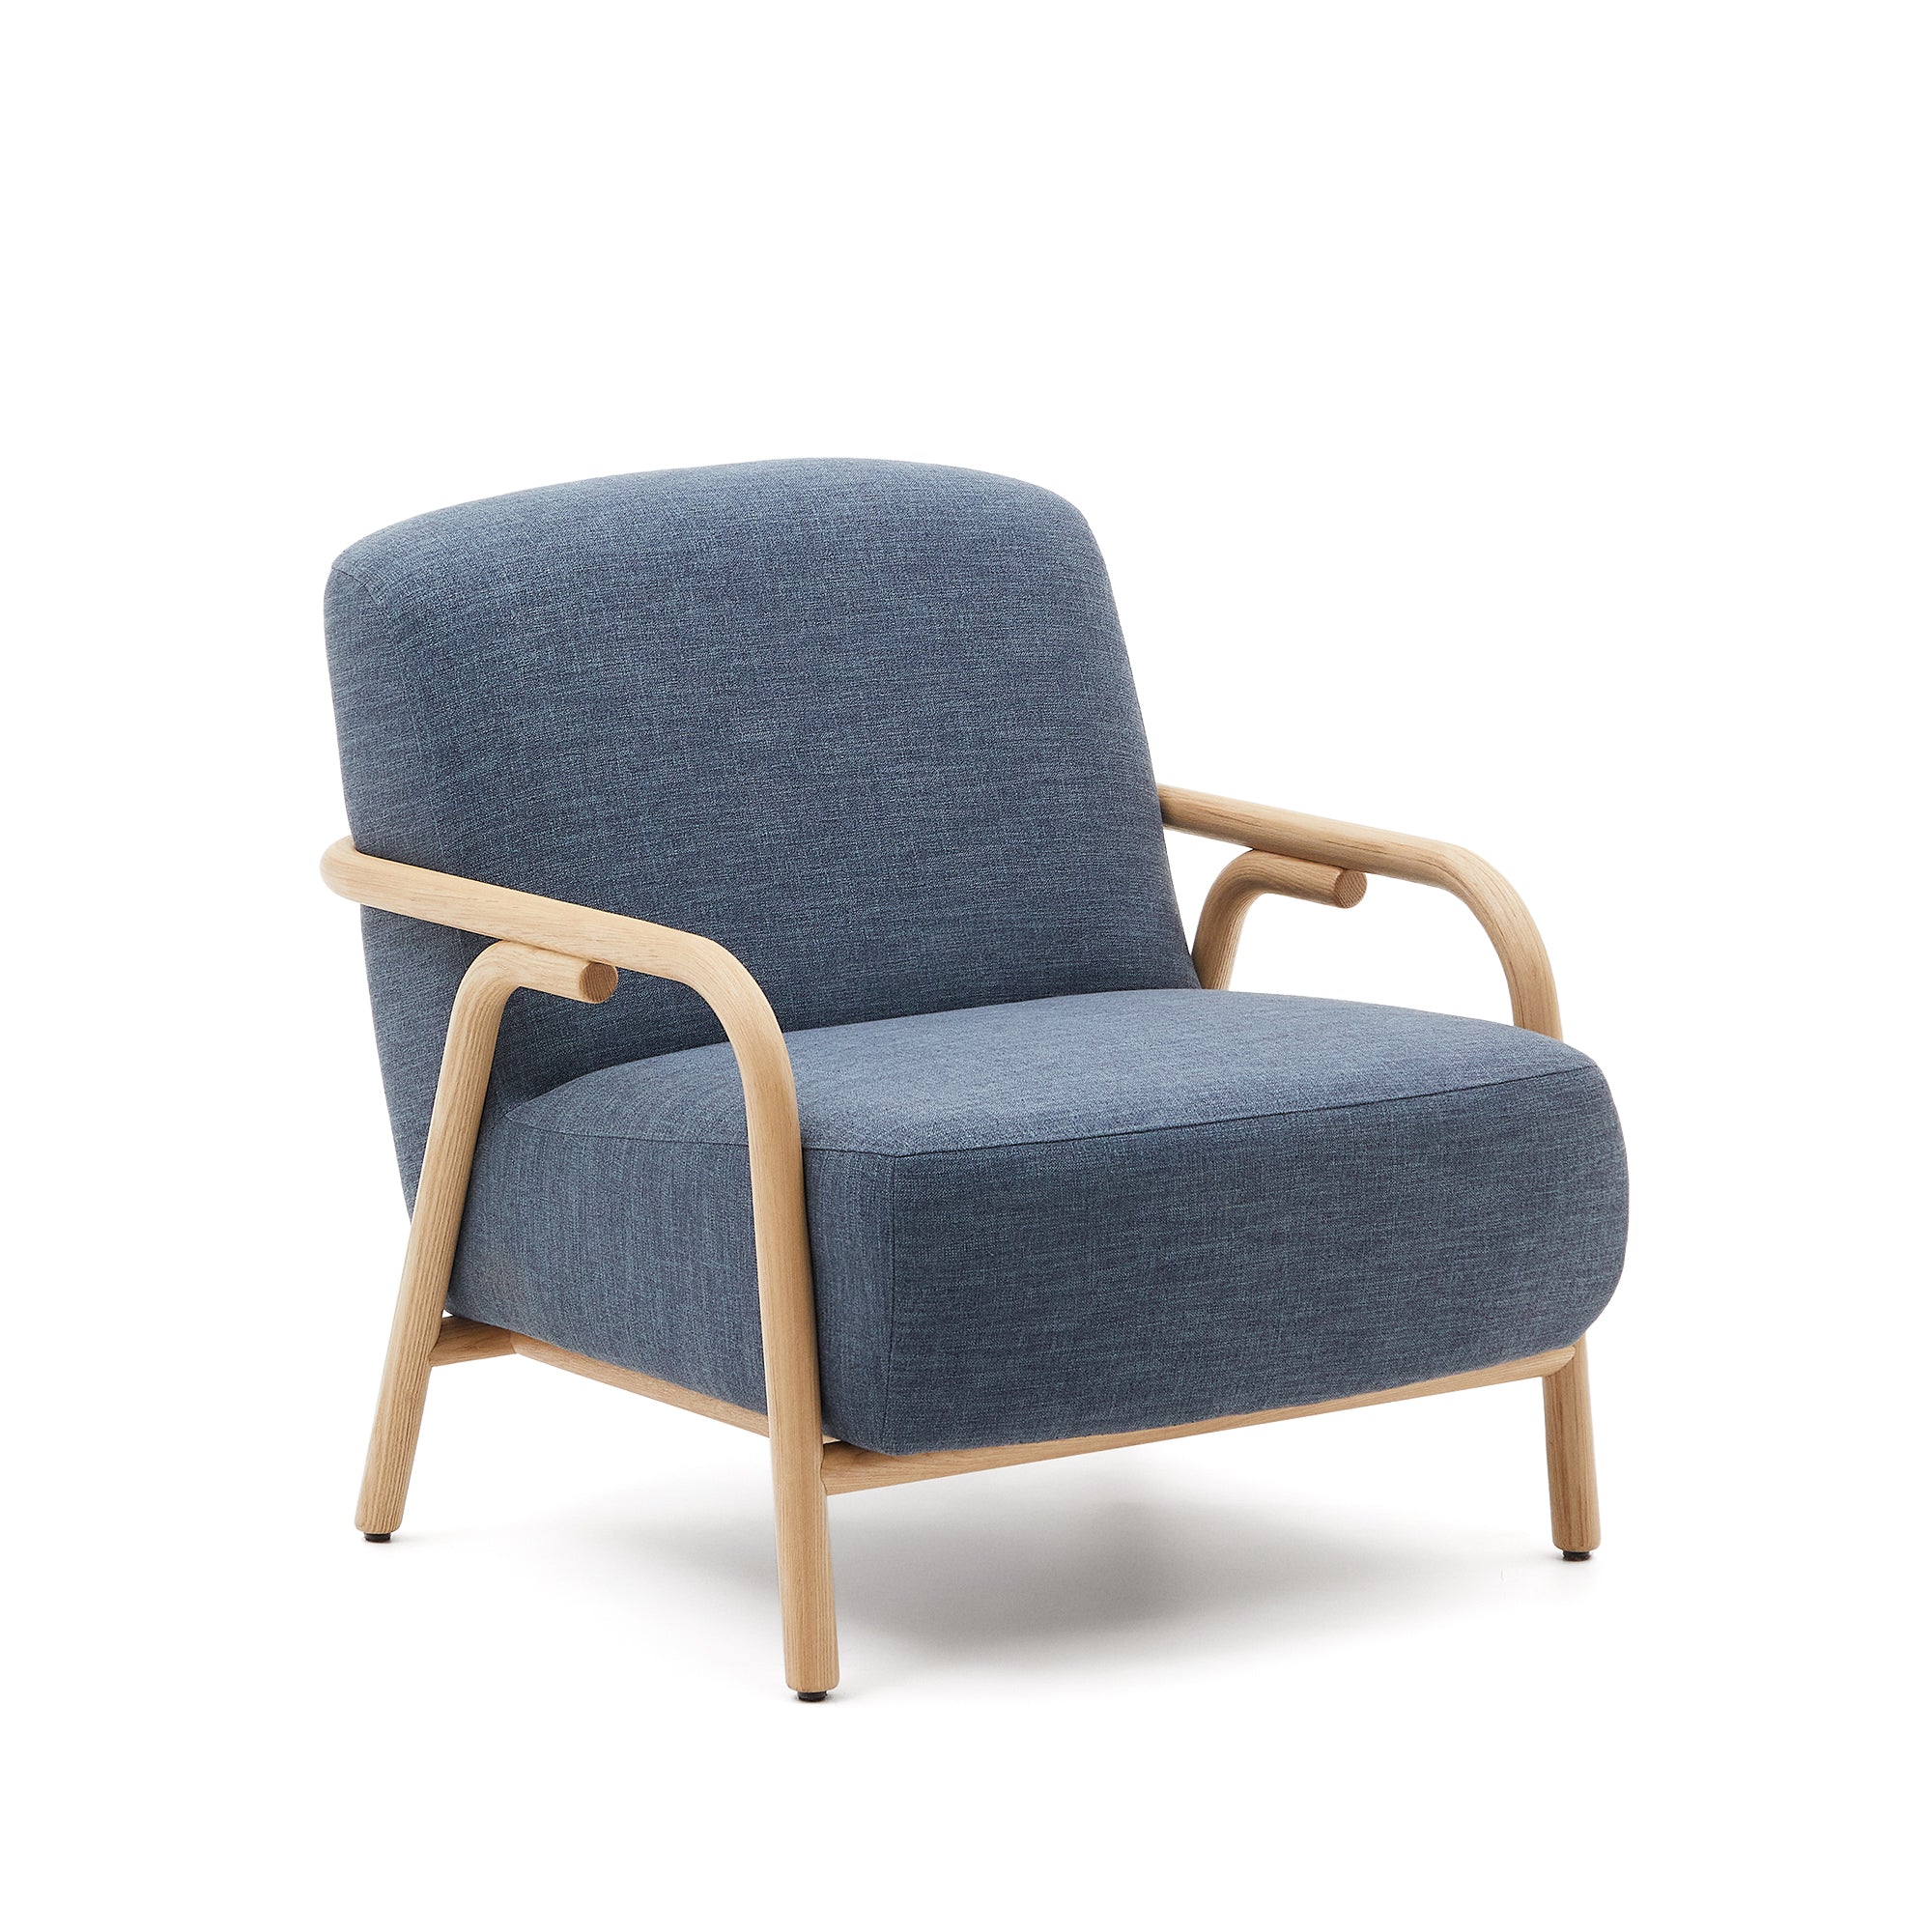 Sylo kék fotel, szilárd kőrisfából készült, 100% FSC